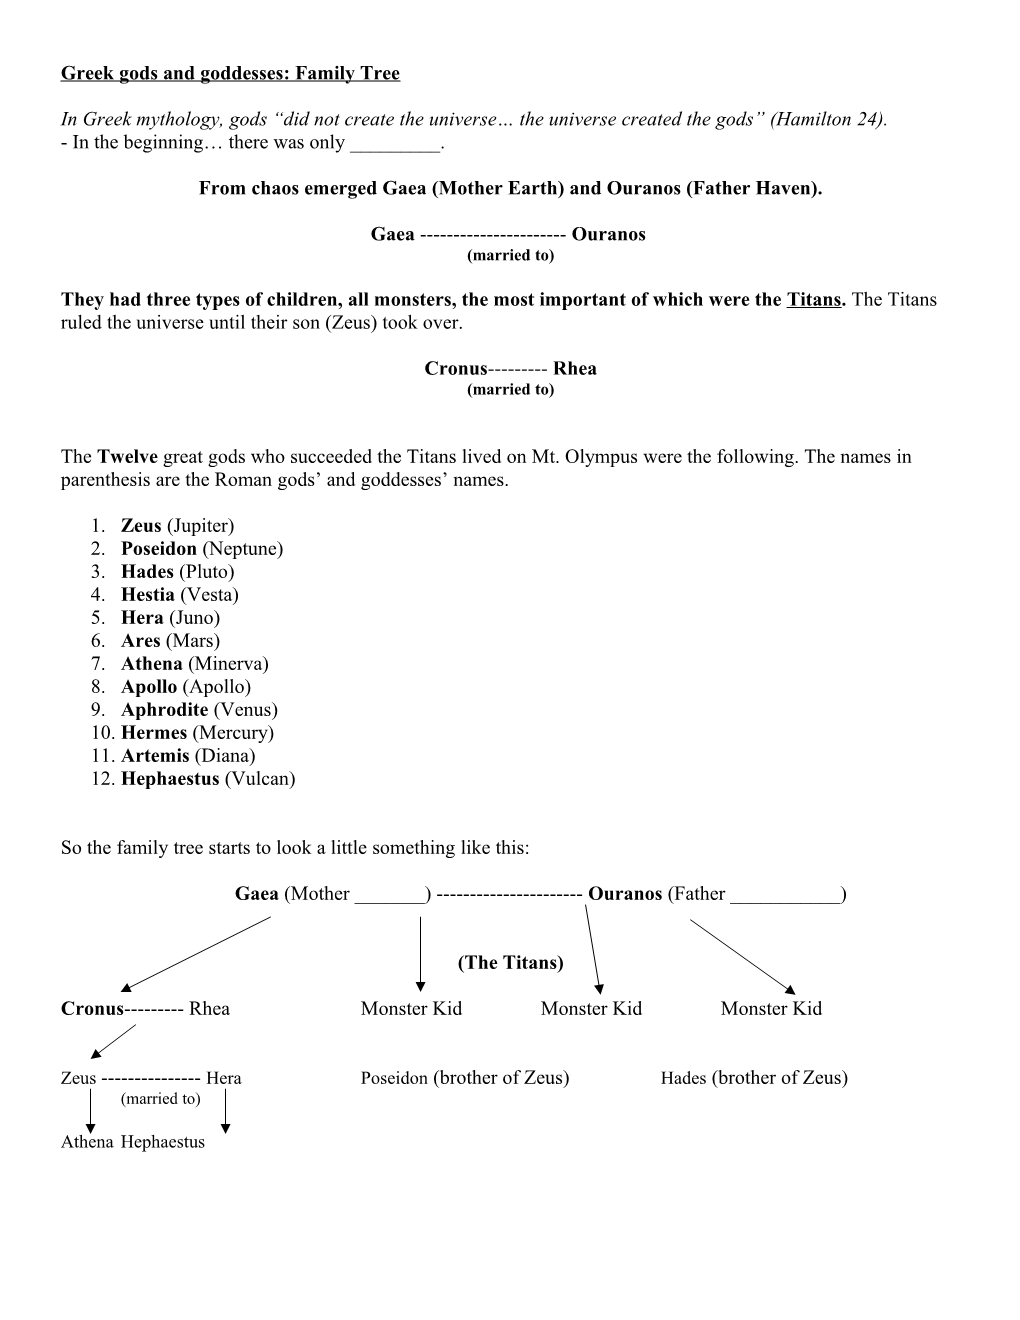 Greek Gods and Goddesses: Family Tree